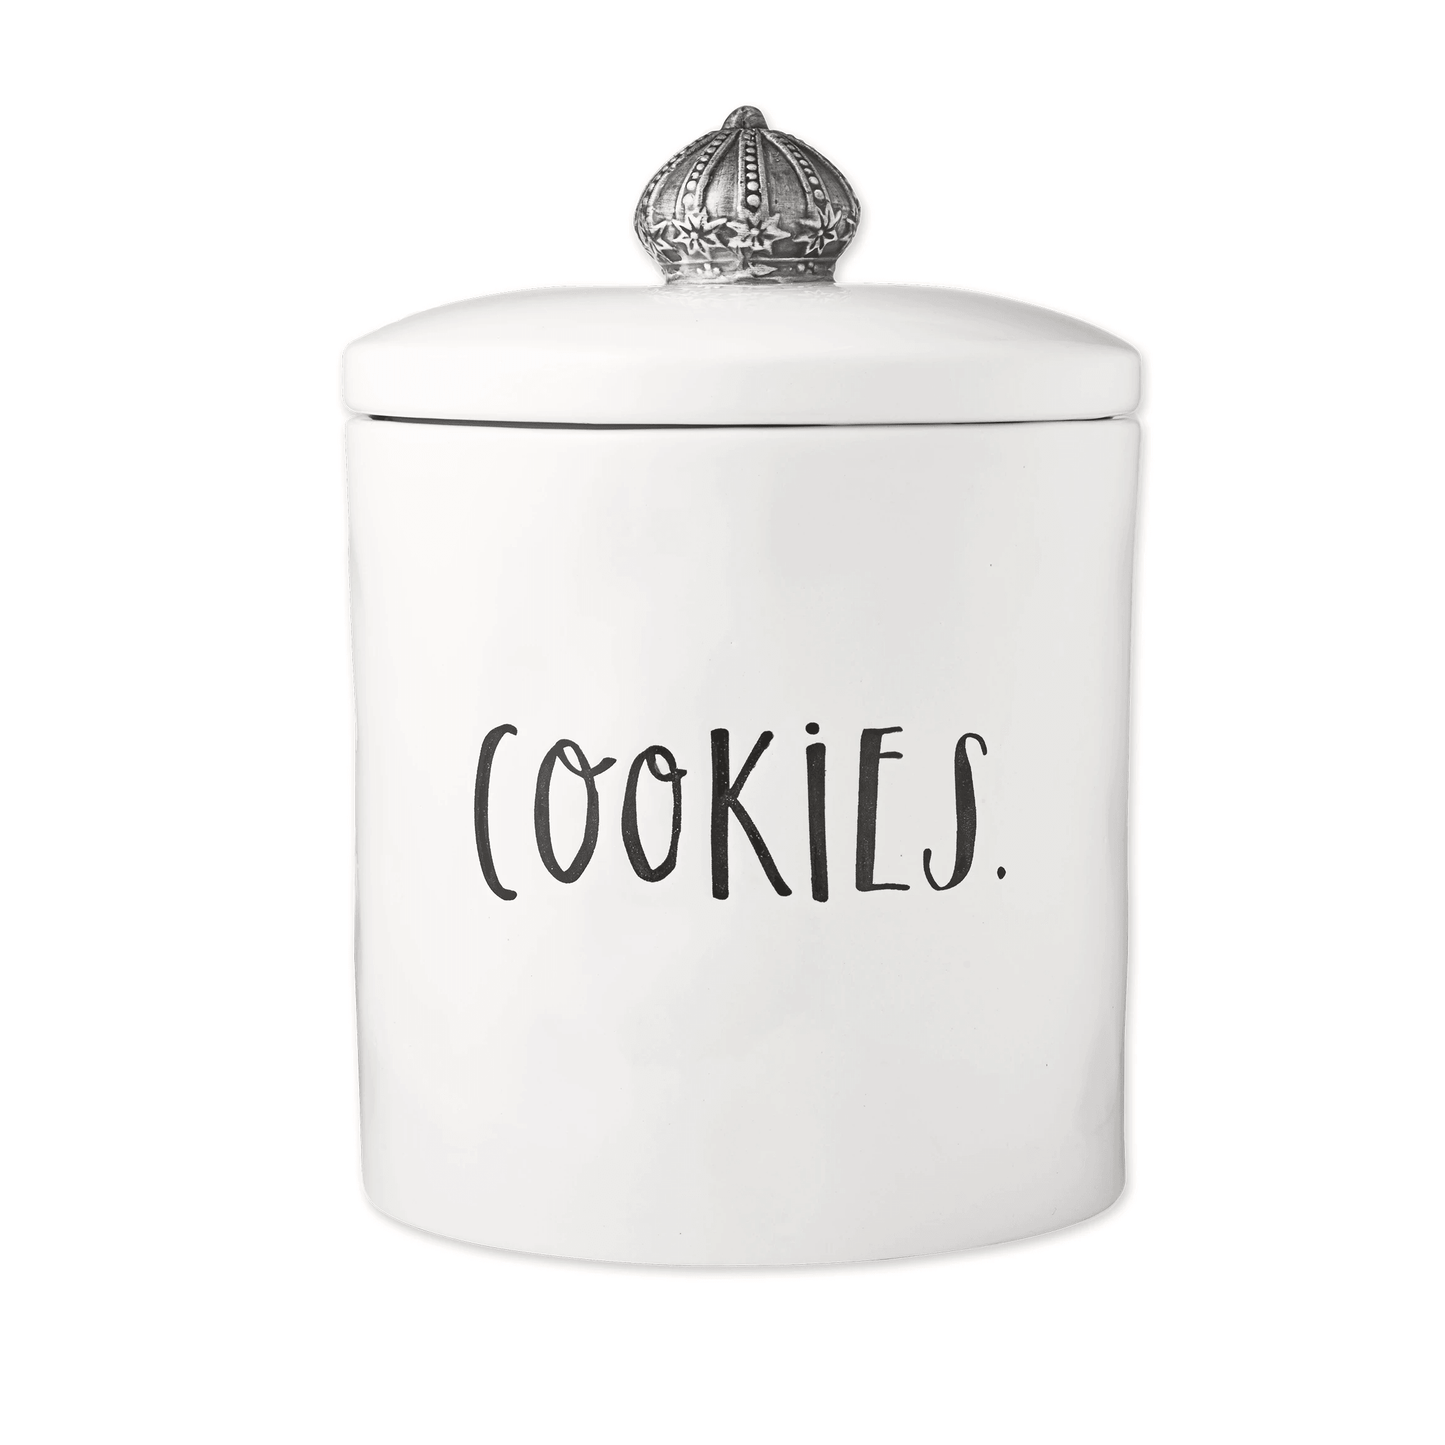 Rae Dunn Stem Print Crown Cookie Jar - The Silver Dahlia